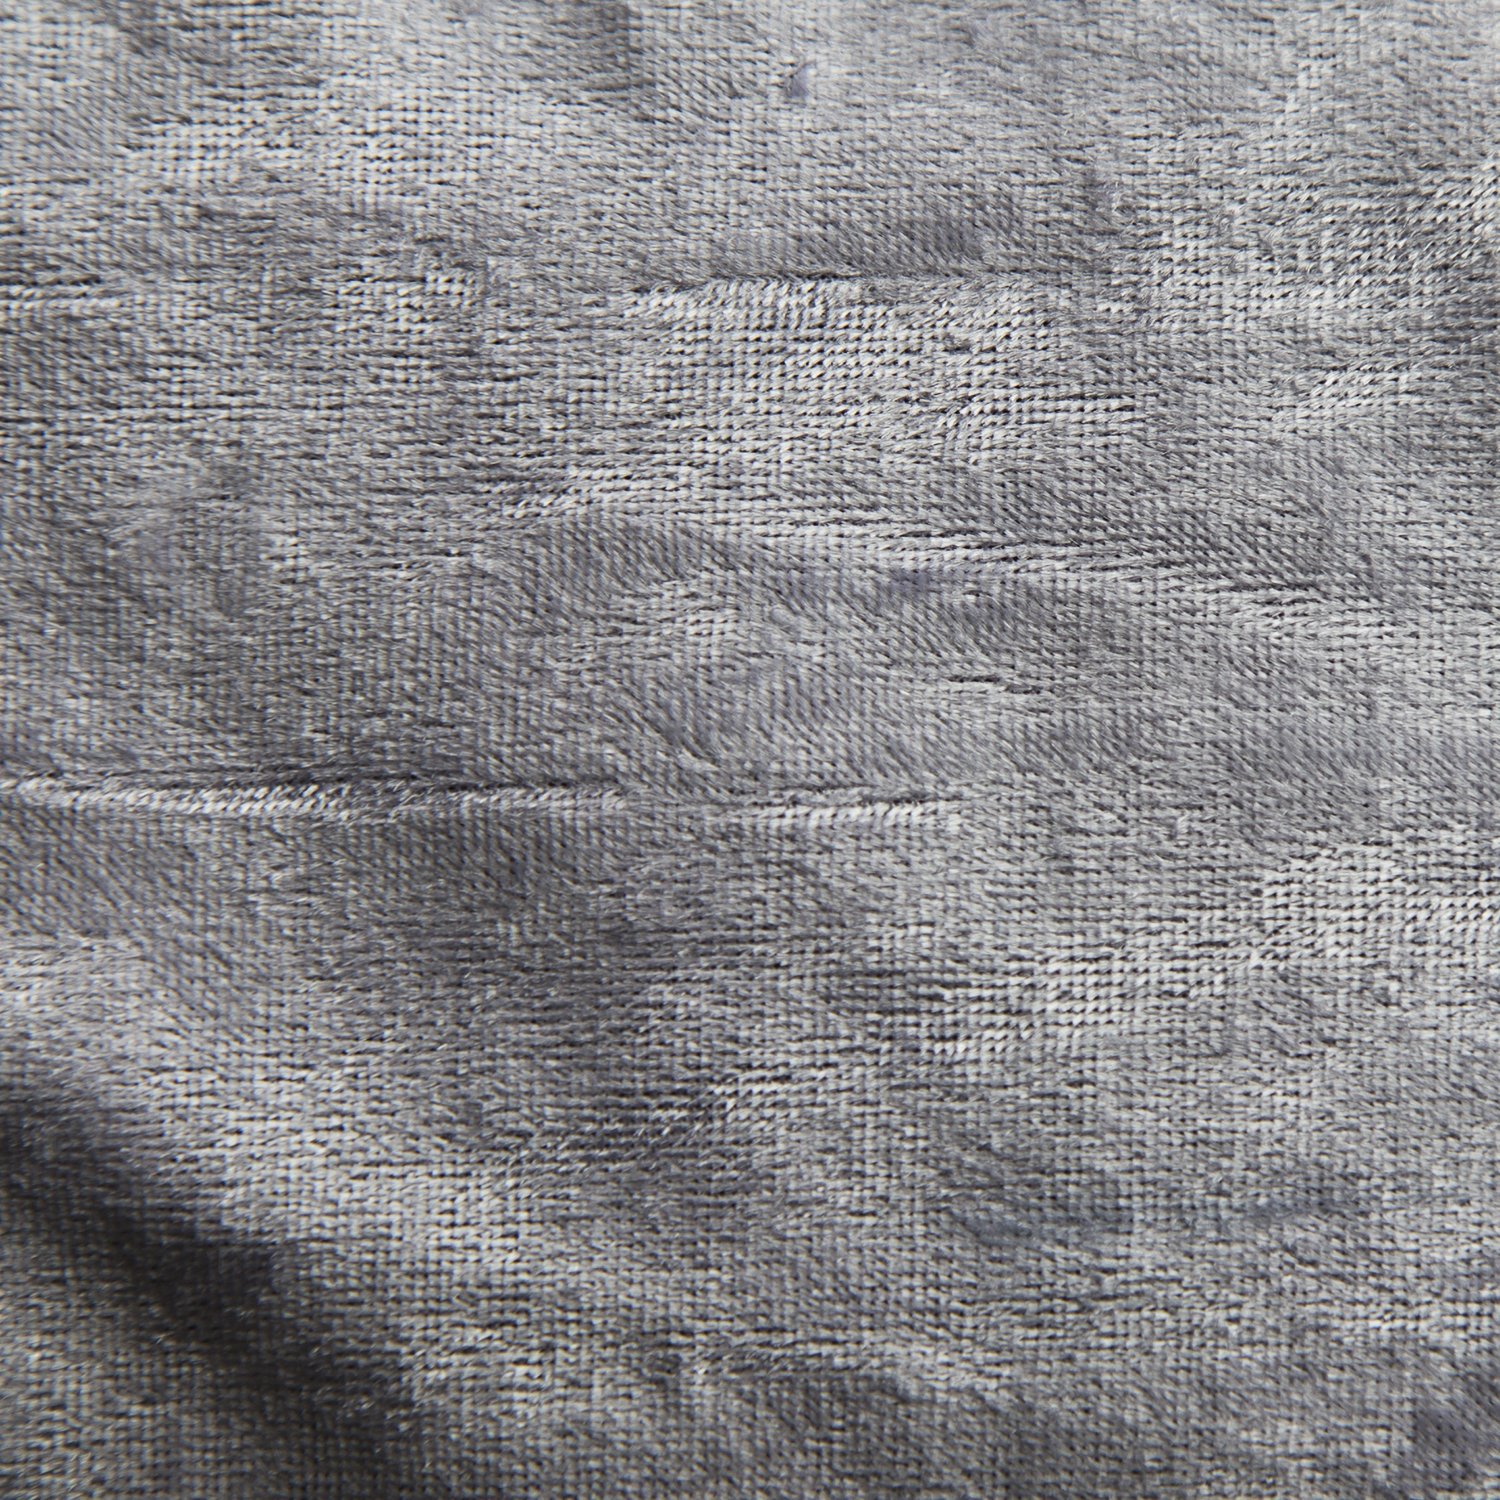 Ткань уплотненный гобелен серебристый/фиолетовый бархат (KS-431) - изображение 1